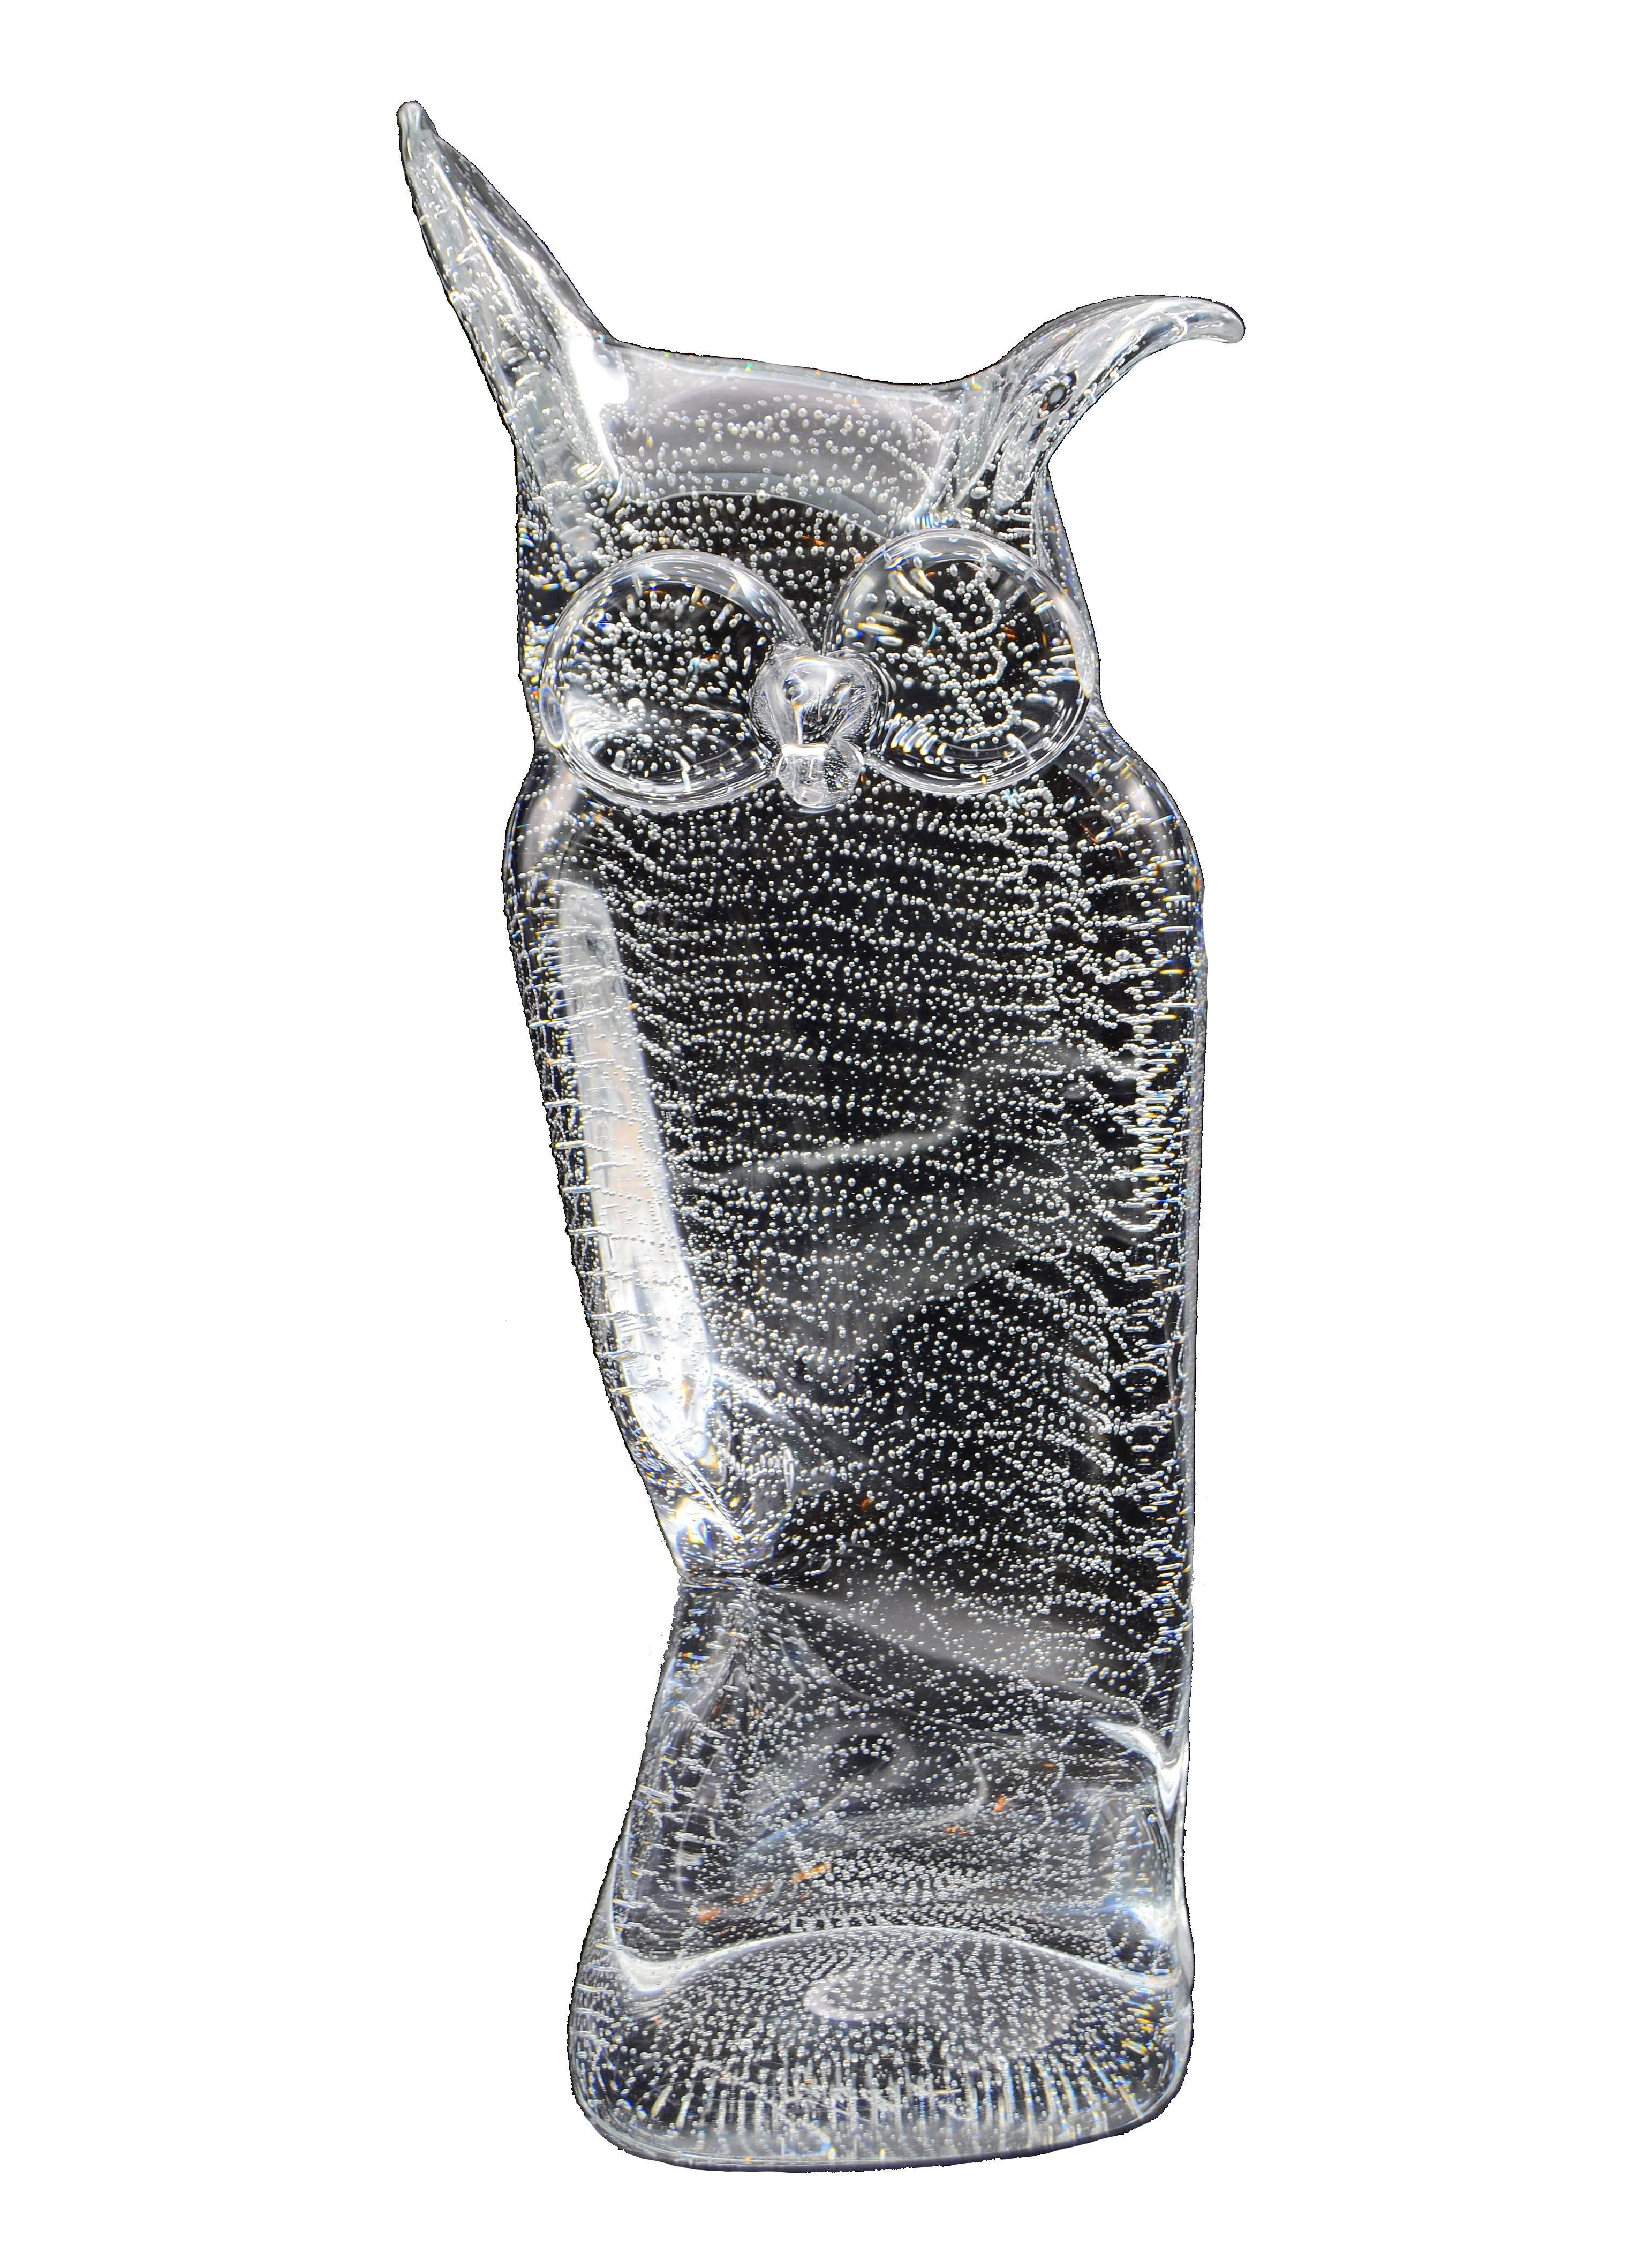 Art Glass Licio Zanetti Murano Glass Owl Sculpture with Bubbles